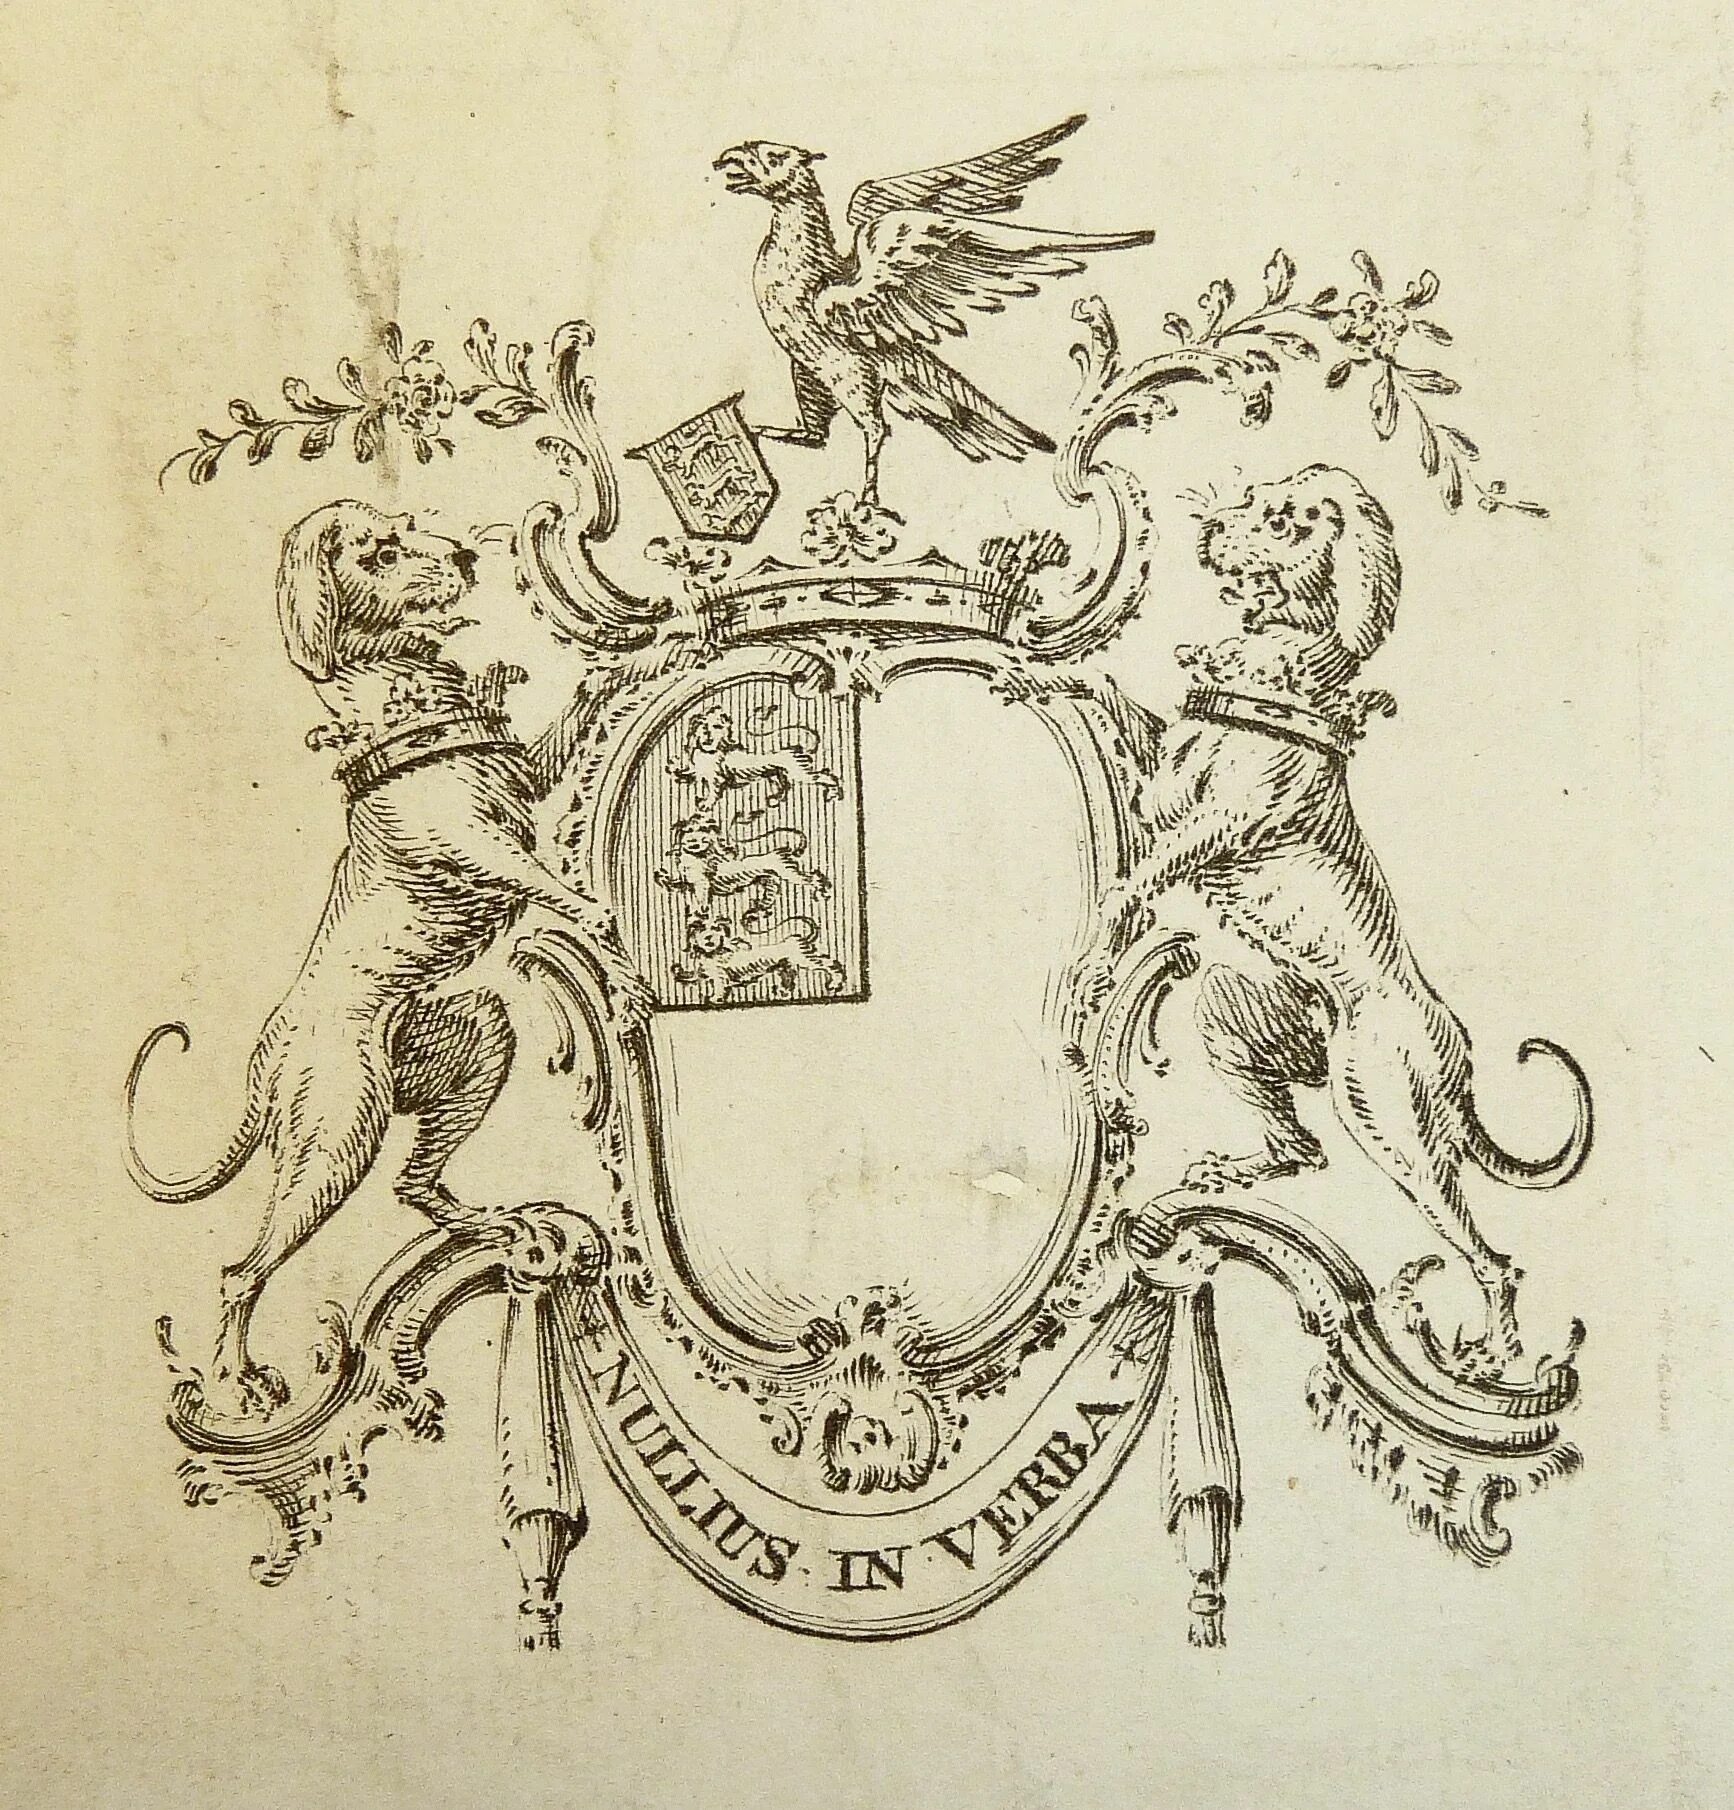 Royal society. Лондонское Королевское общество 17 век. Королевское общество (Royal Society). Лондонское Королевское общество 18 век. Лондонское Королевское общество герб.